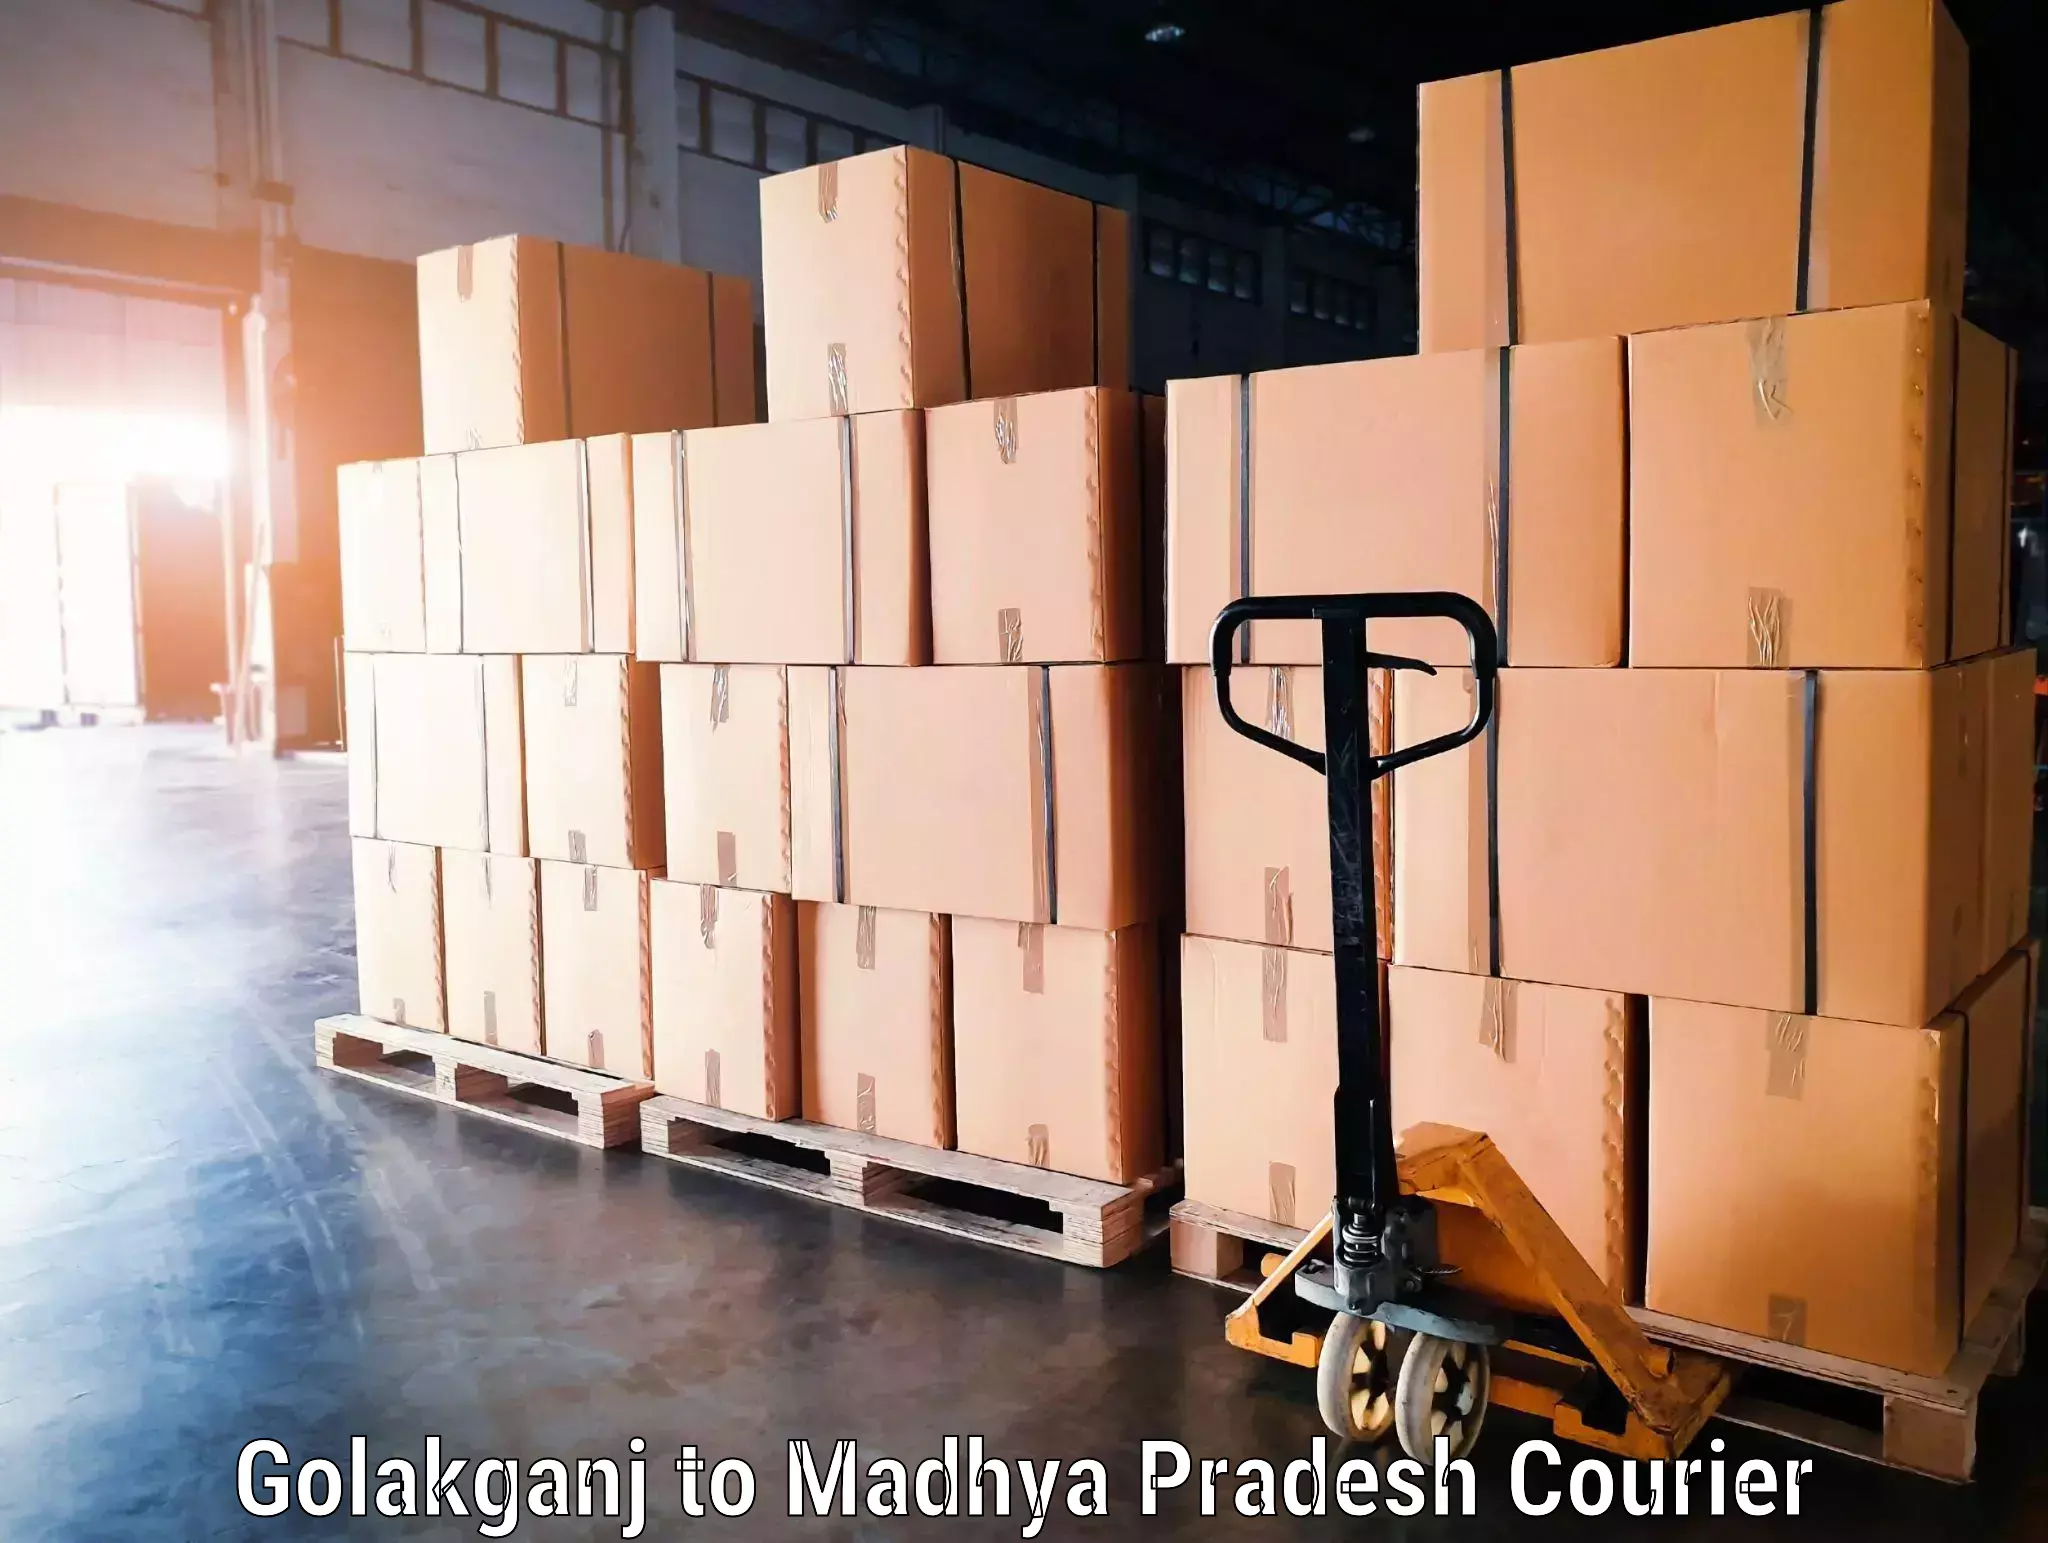 Luggage delivery network Golakganj to Maheshwar